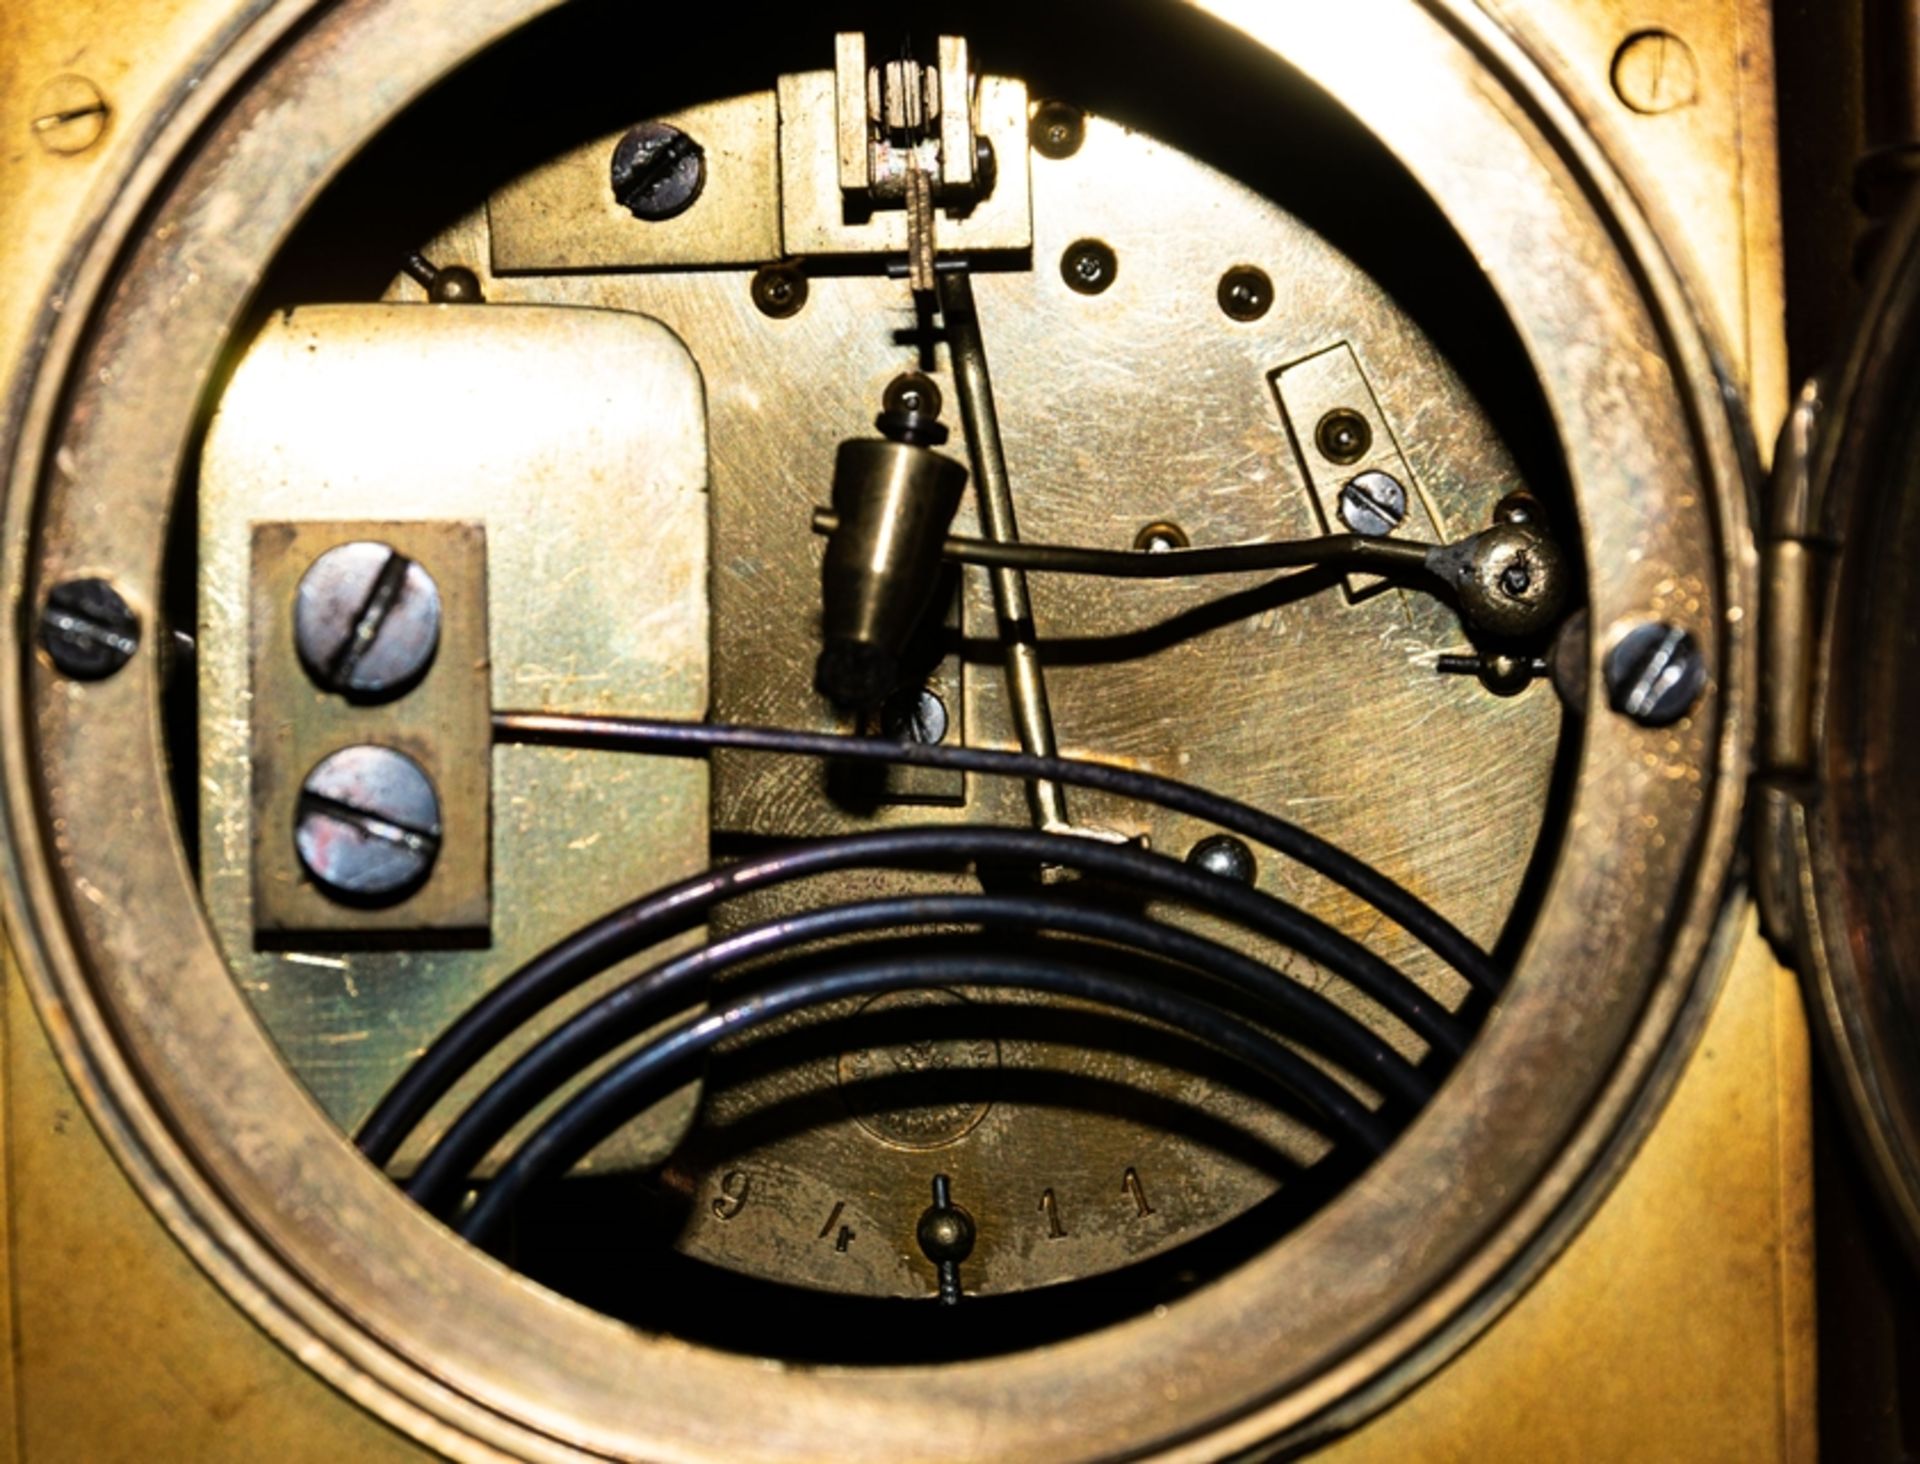 Kaminuhr in Messinggehäuse, Frankreich um 1900; ungeprüftes mechanisches Uhrwer - Image 19 of 20